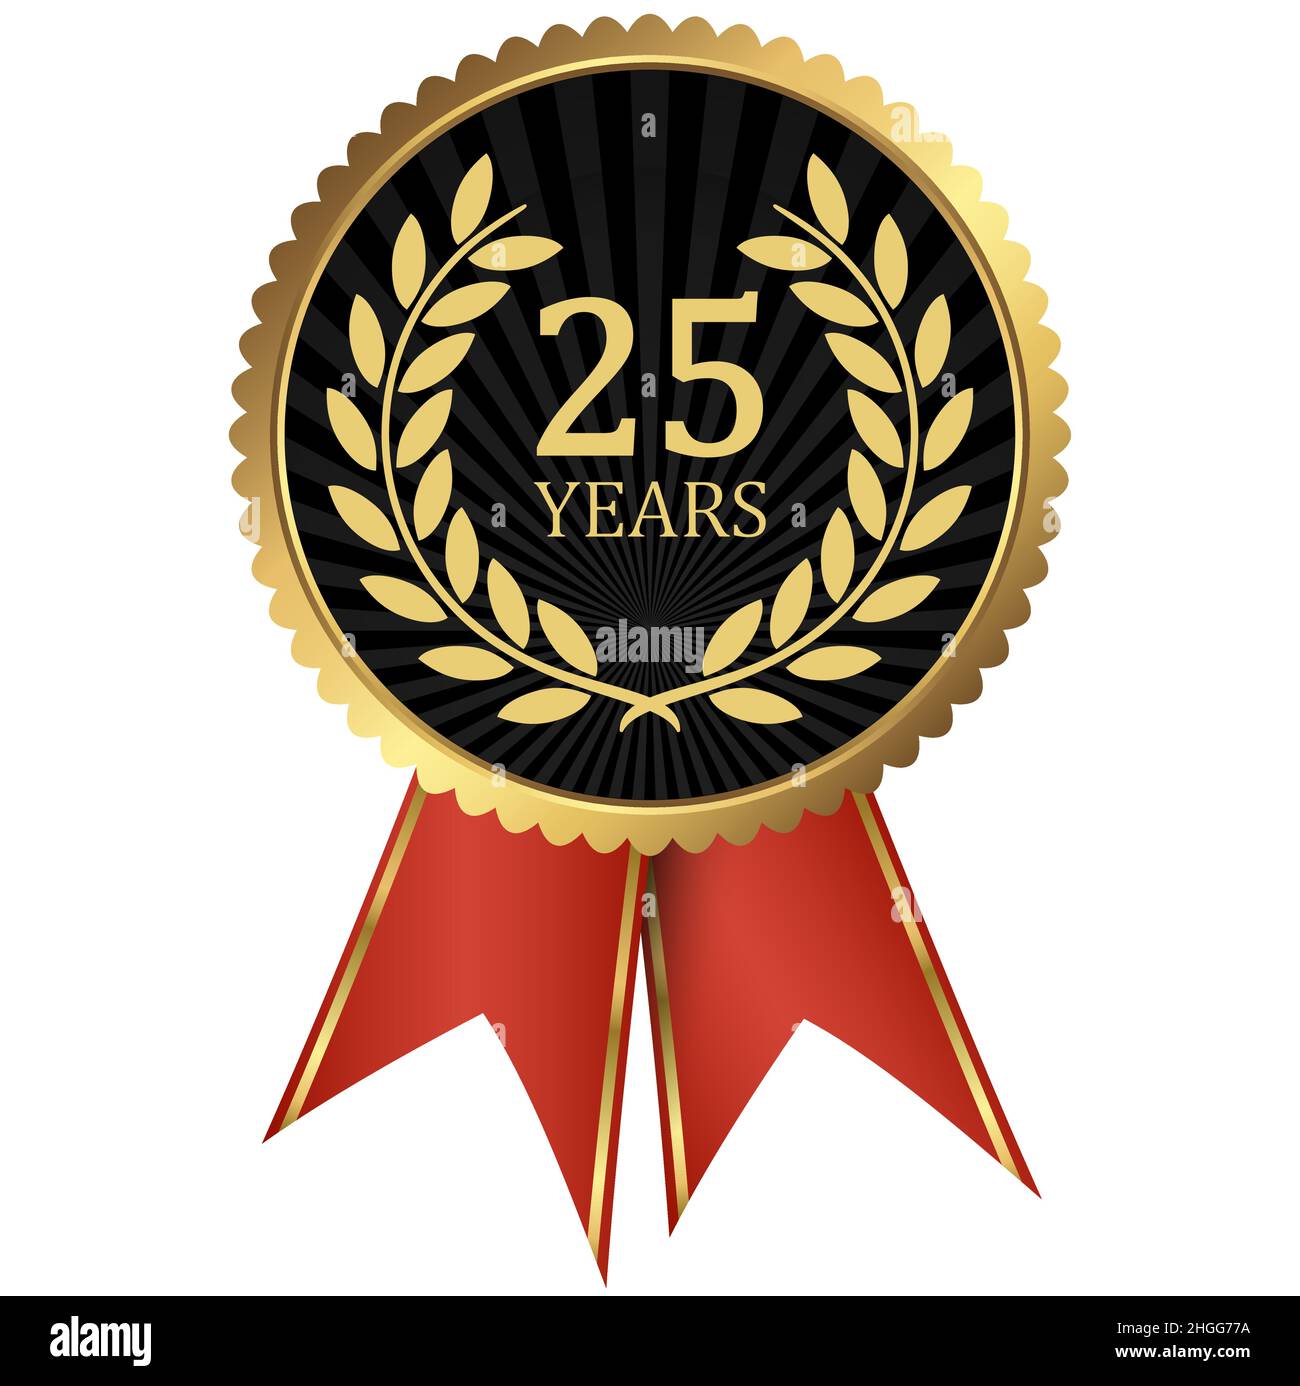 eps-Vektordatei mit goldenem Medaillon mit Lorbeerkranz für Erfolg oder Firmenjubiläum und Text 25 Jahre Stock Vektor